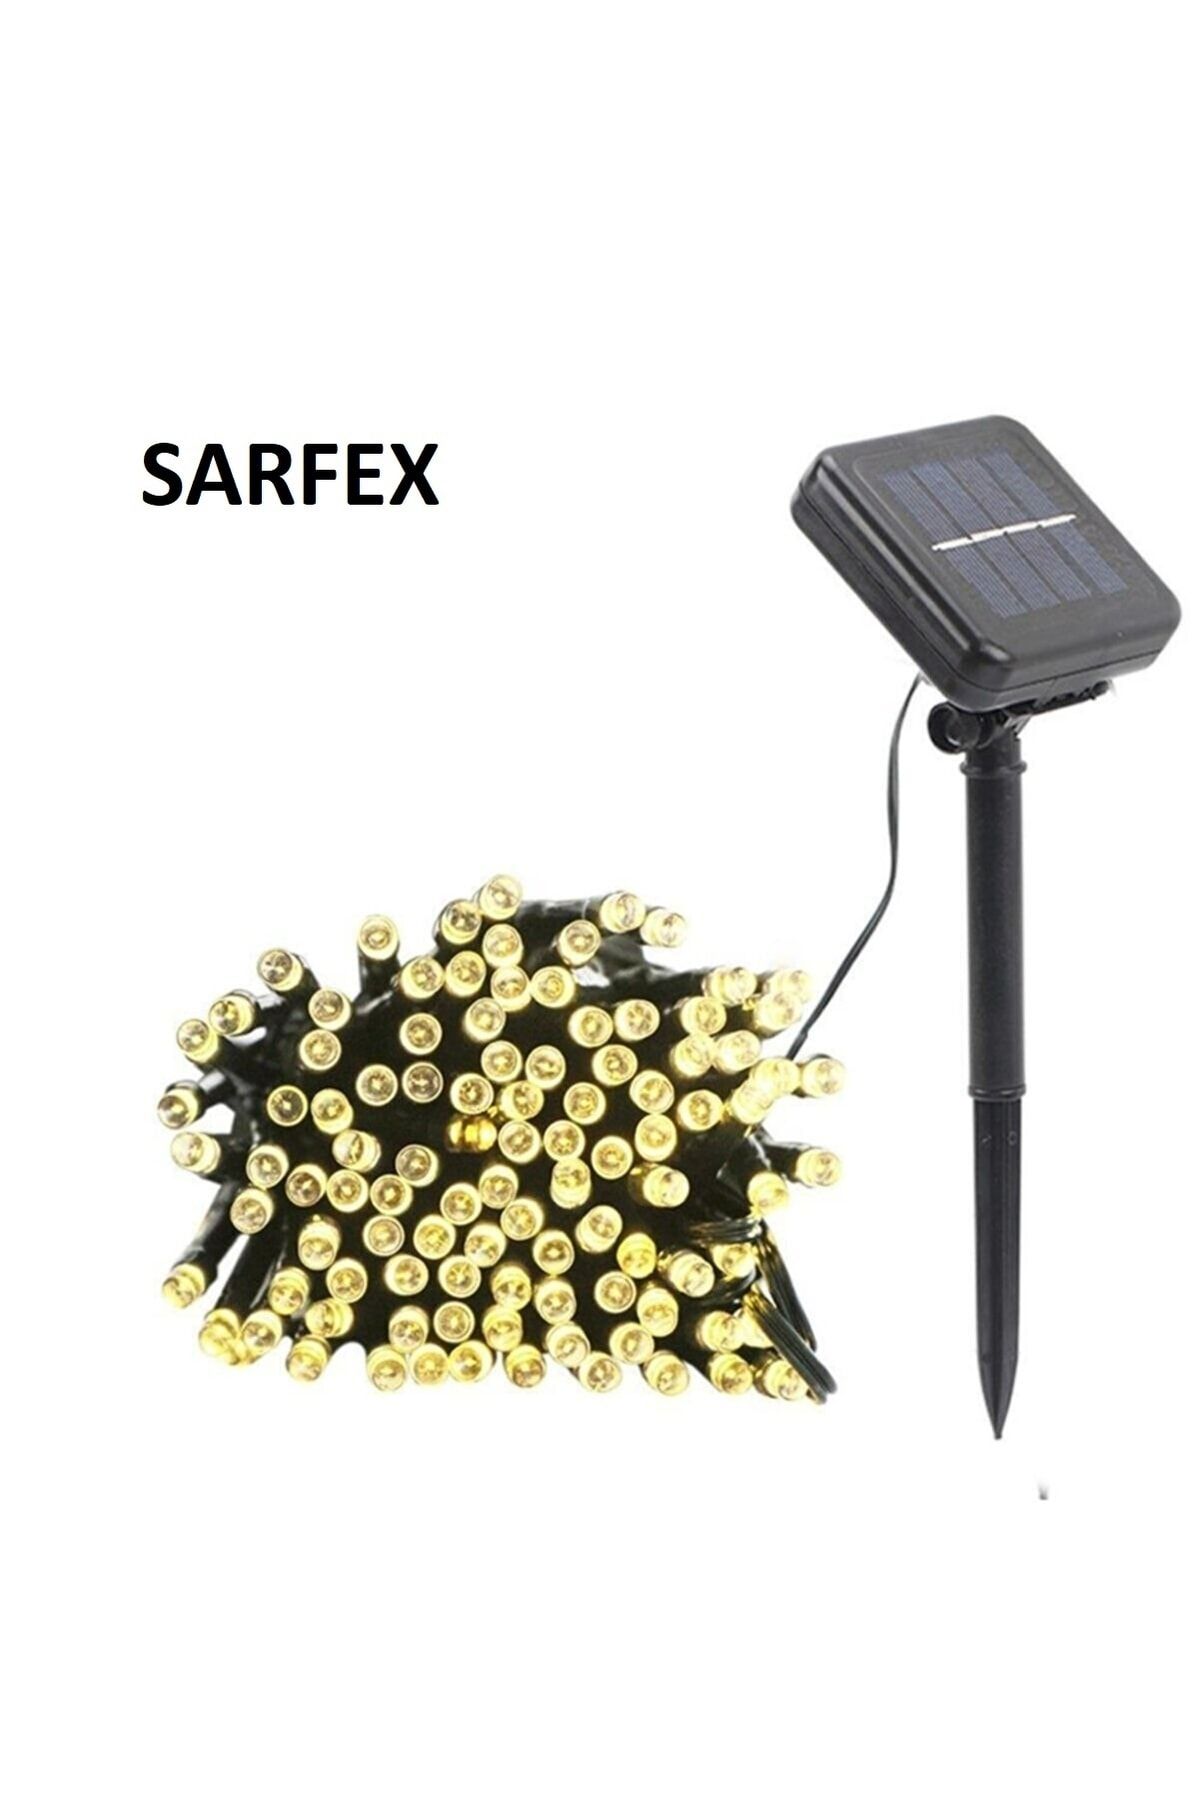 SARFEX Solar Güneş Enerjili Dış Mekan Bahçe 8 Modlu 5 Metre 50 Led Gün Işığı Aydınlatma